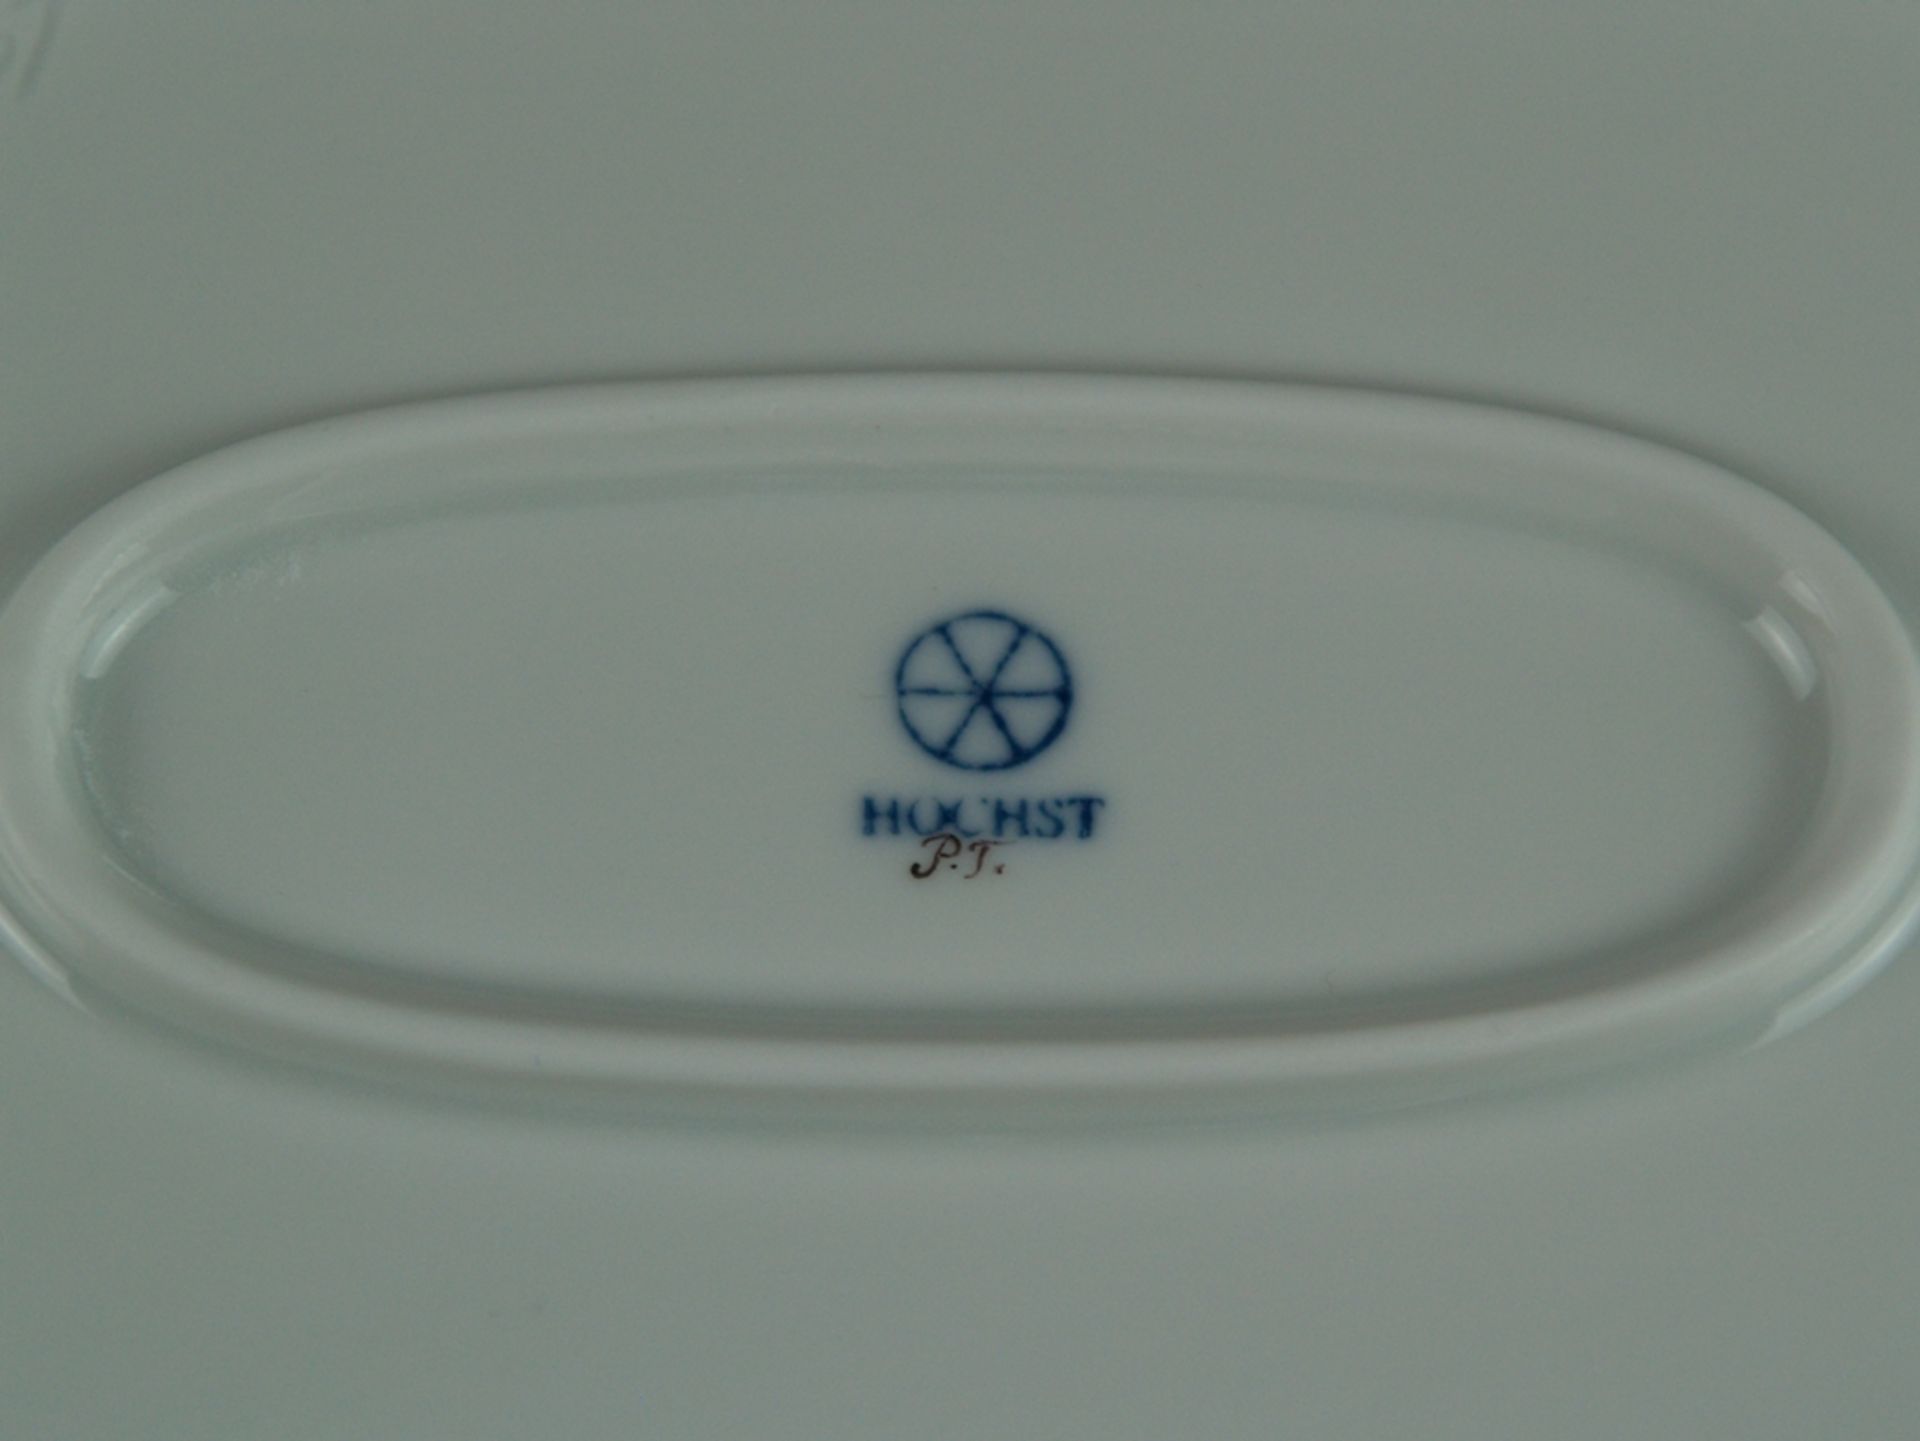 Platte - Hoechst blaue Radmarke mit Malerzeichen, 20.Jh., polychrom bemalt, ostasiatischer Dekor, - Bild 3 aus 3